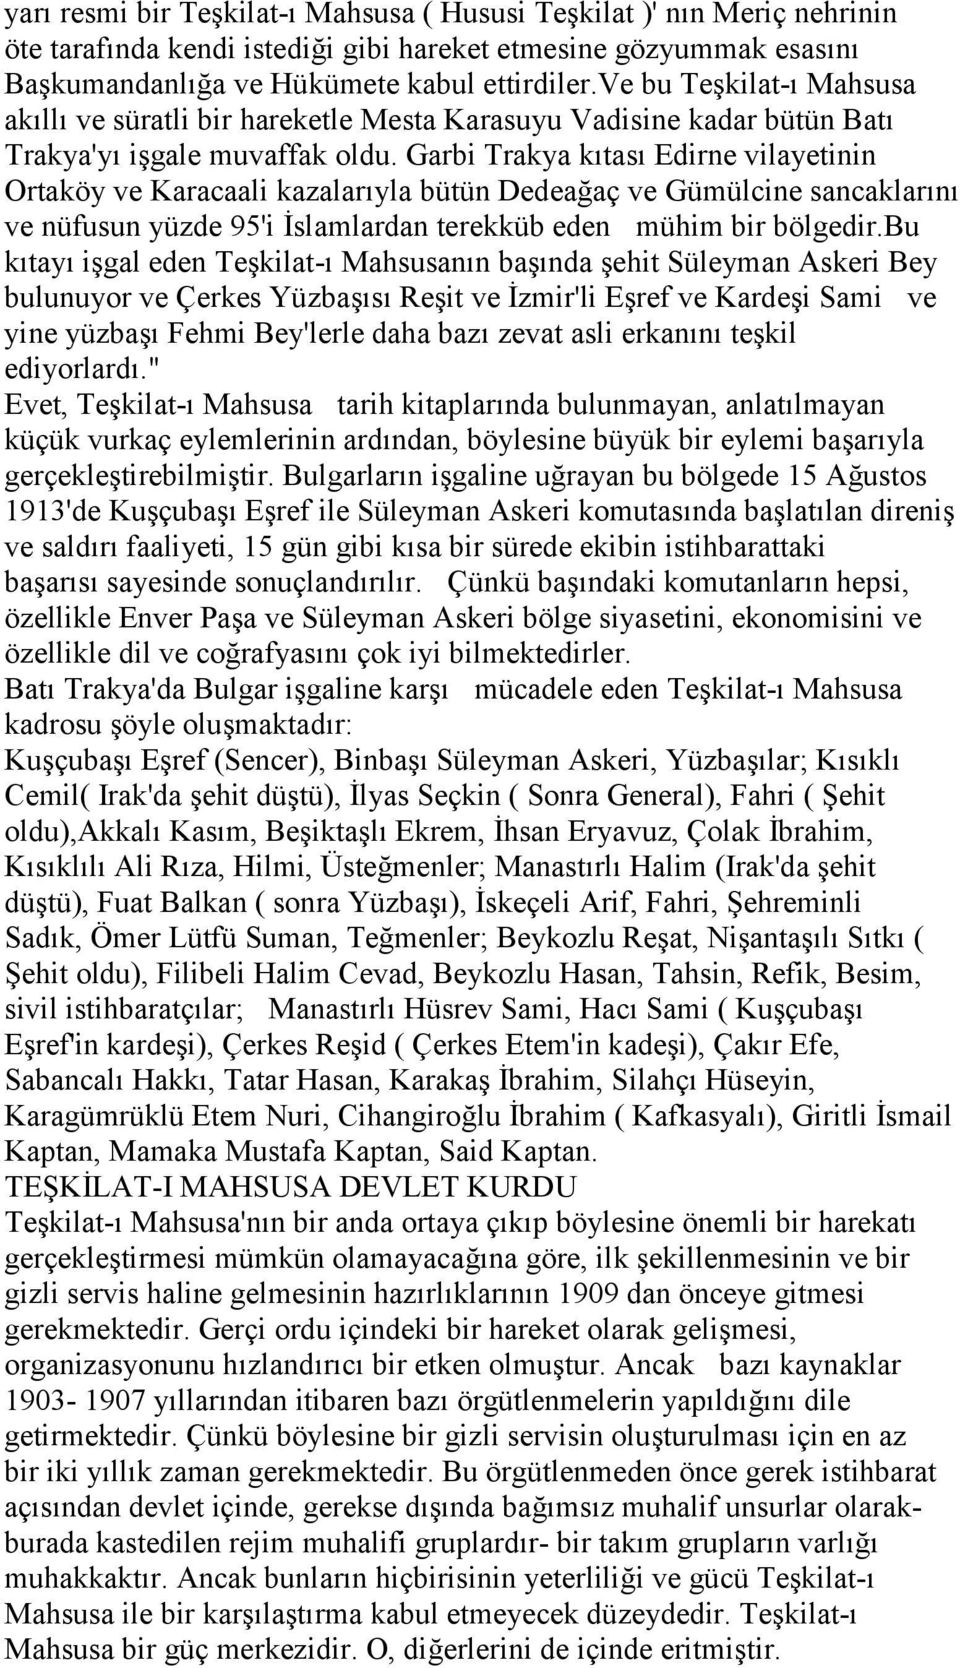 Garbi Trakya kıtası Edirne vilayetinin Ortaköy ve Karacaali kazalarıyla bütün Dedeağaç ve Gümülcine sancaklarını ve nüfusun yüzde 95'i İslamlardan terekküb eden mühim bir bölgedir.